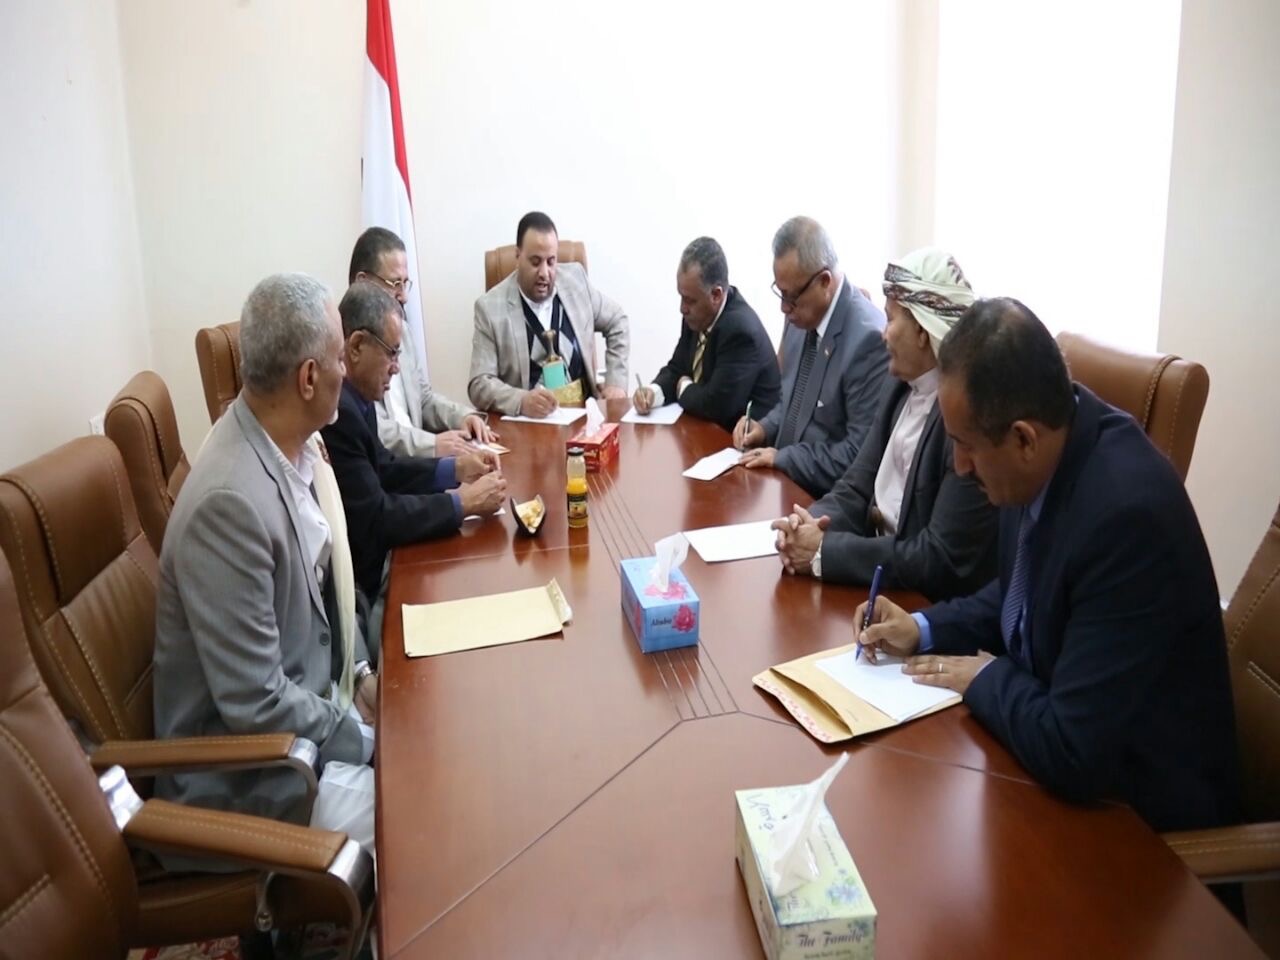 اجتماع لمجلس الحوثي وصالح يقر بقاء الحكومة في انعقاد دائم ويمهلها اسبوع لمعالجة ازمة النفط